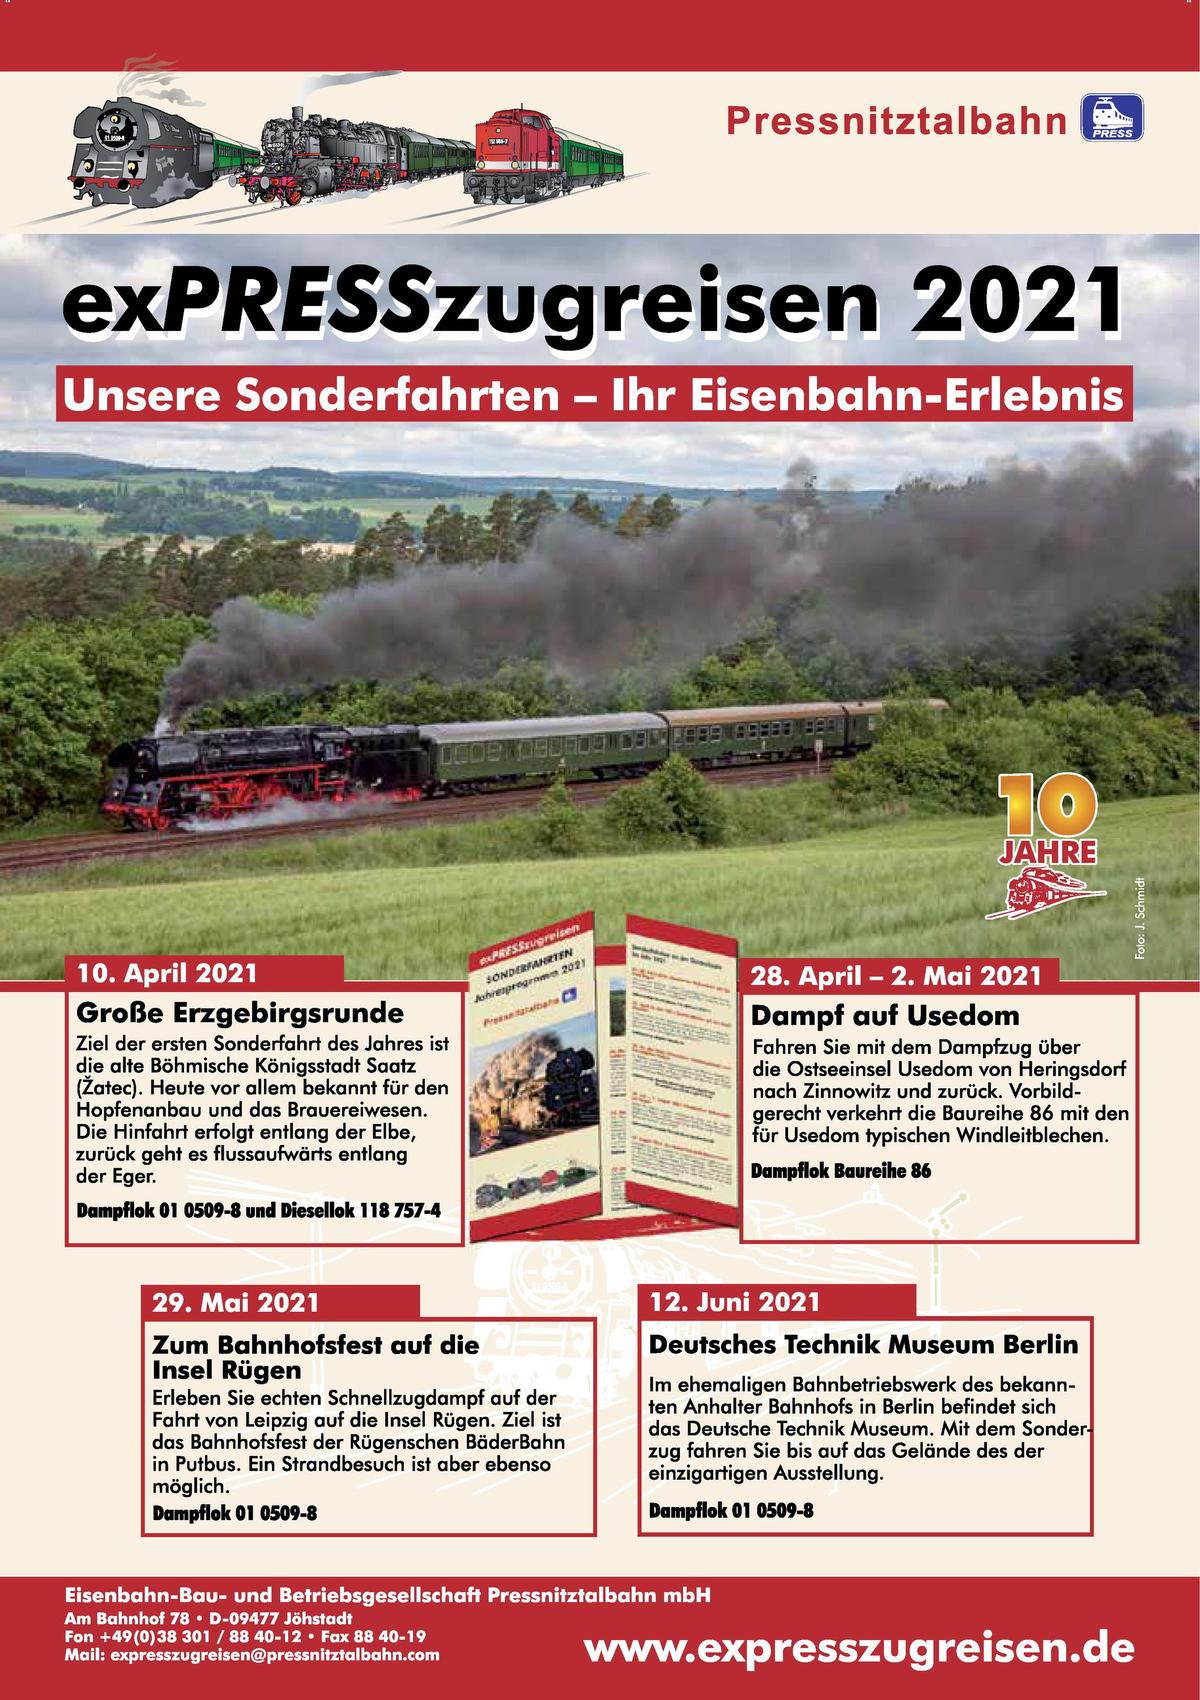 Veranstaltungsankündigung: exPRESSzugreisen 2021 - Unsere Sonderfahrten - Ihr Eisenbahn-Erlebnis